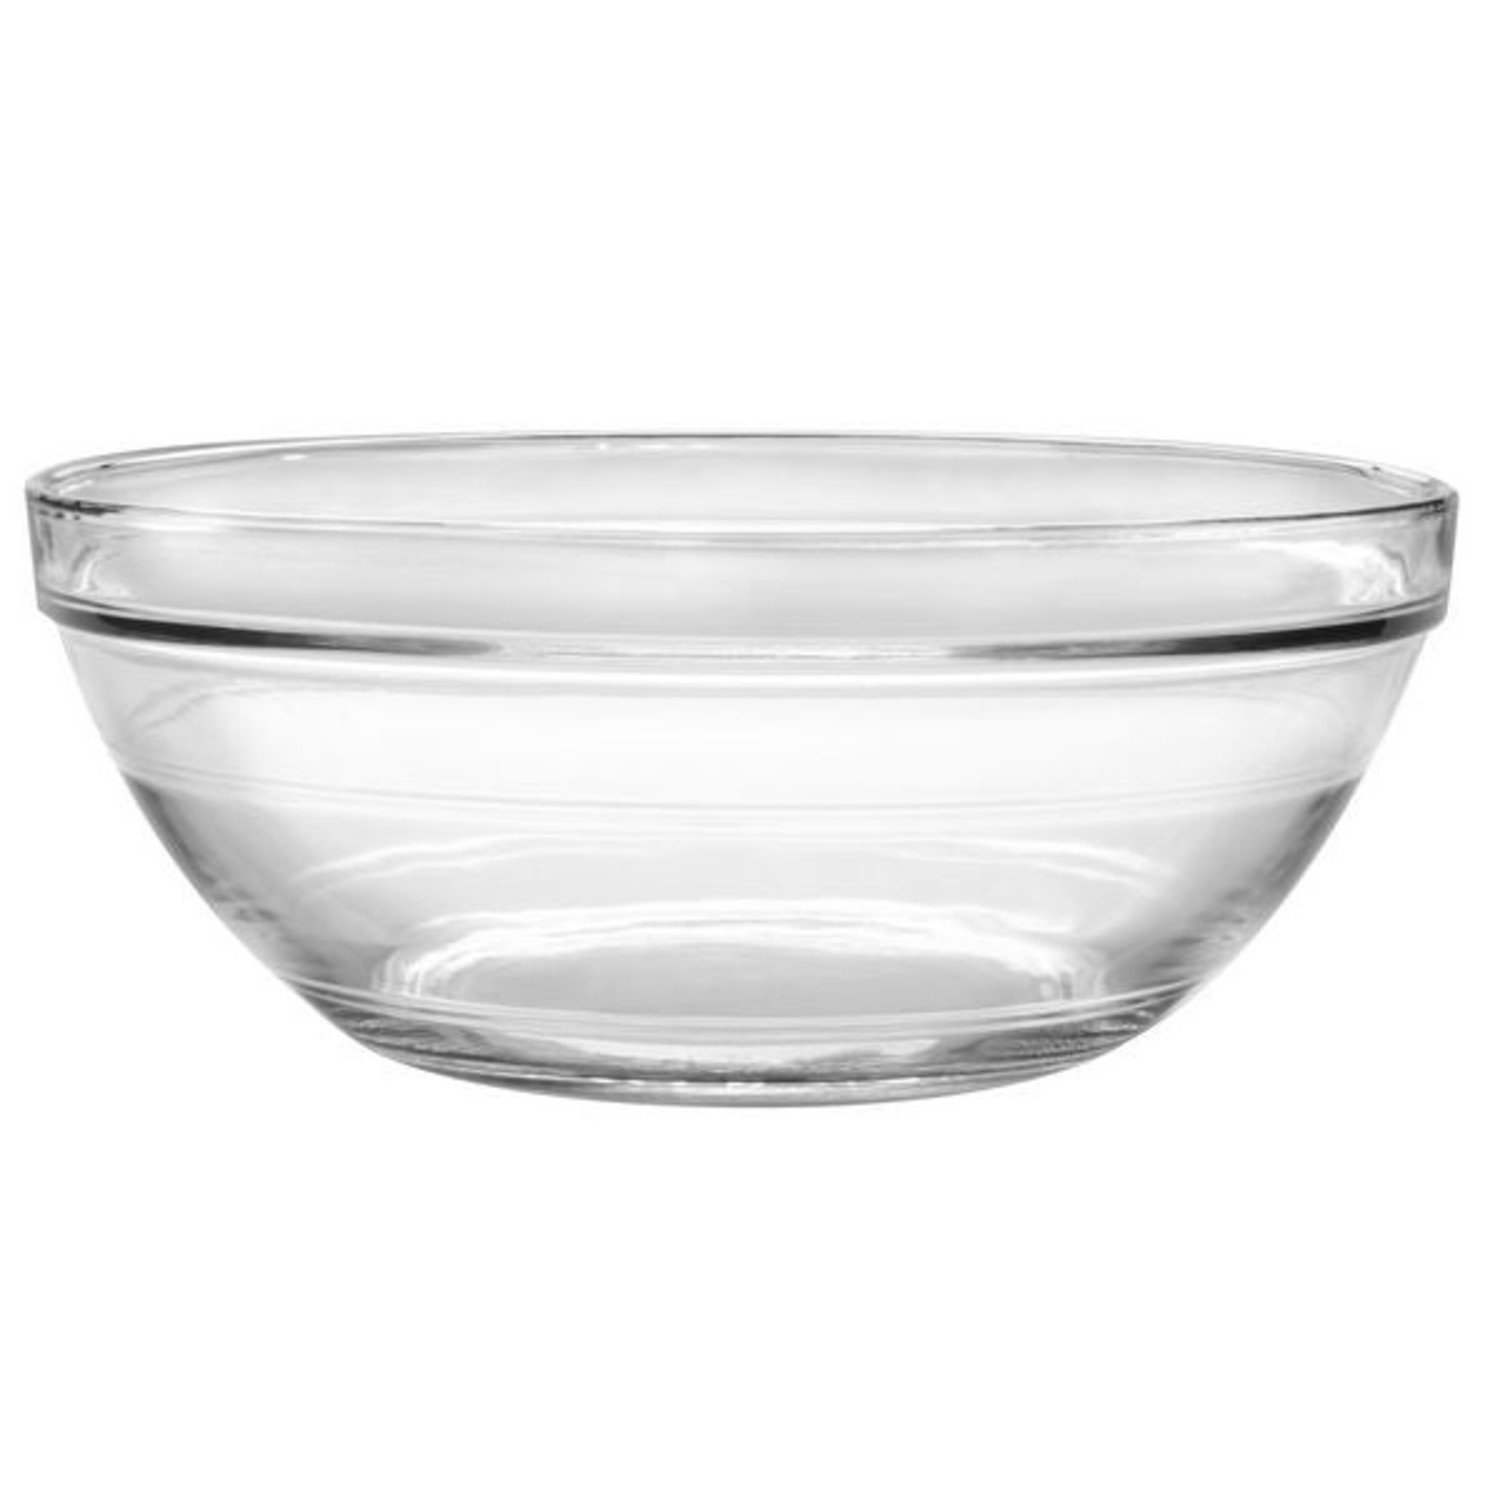 https://cdn.shoplightspeed.com/shops/633447/files/42081774/1500x4000x3/duralex-6-quart-duralex-glass-mixing-bowl.jpg